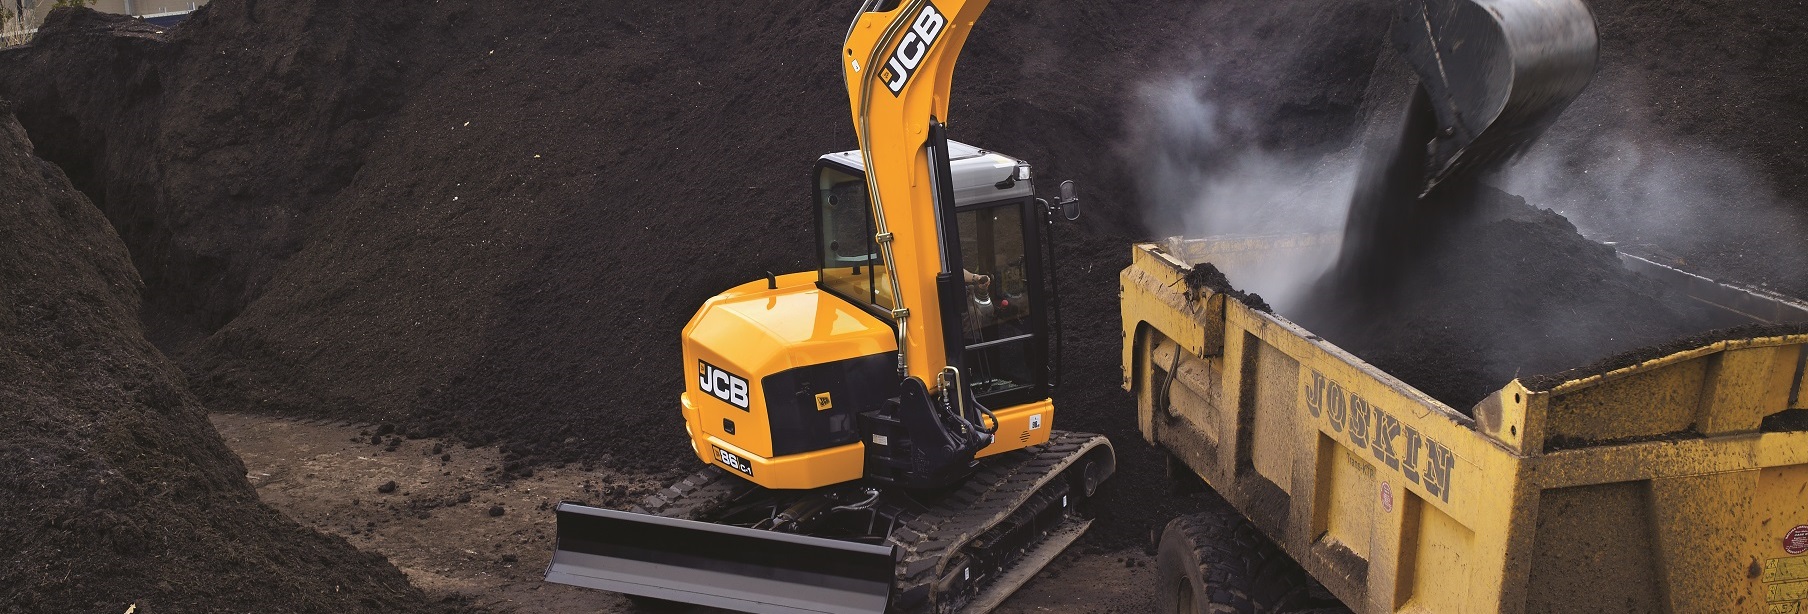 8t, 8 Tonne Excavator for Sale JCB 86C-1 Mini Excavator